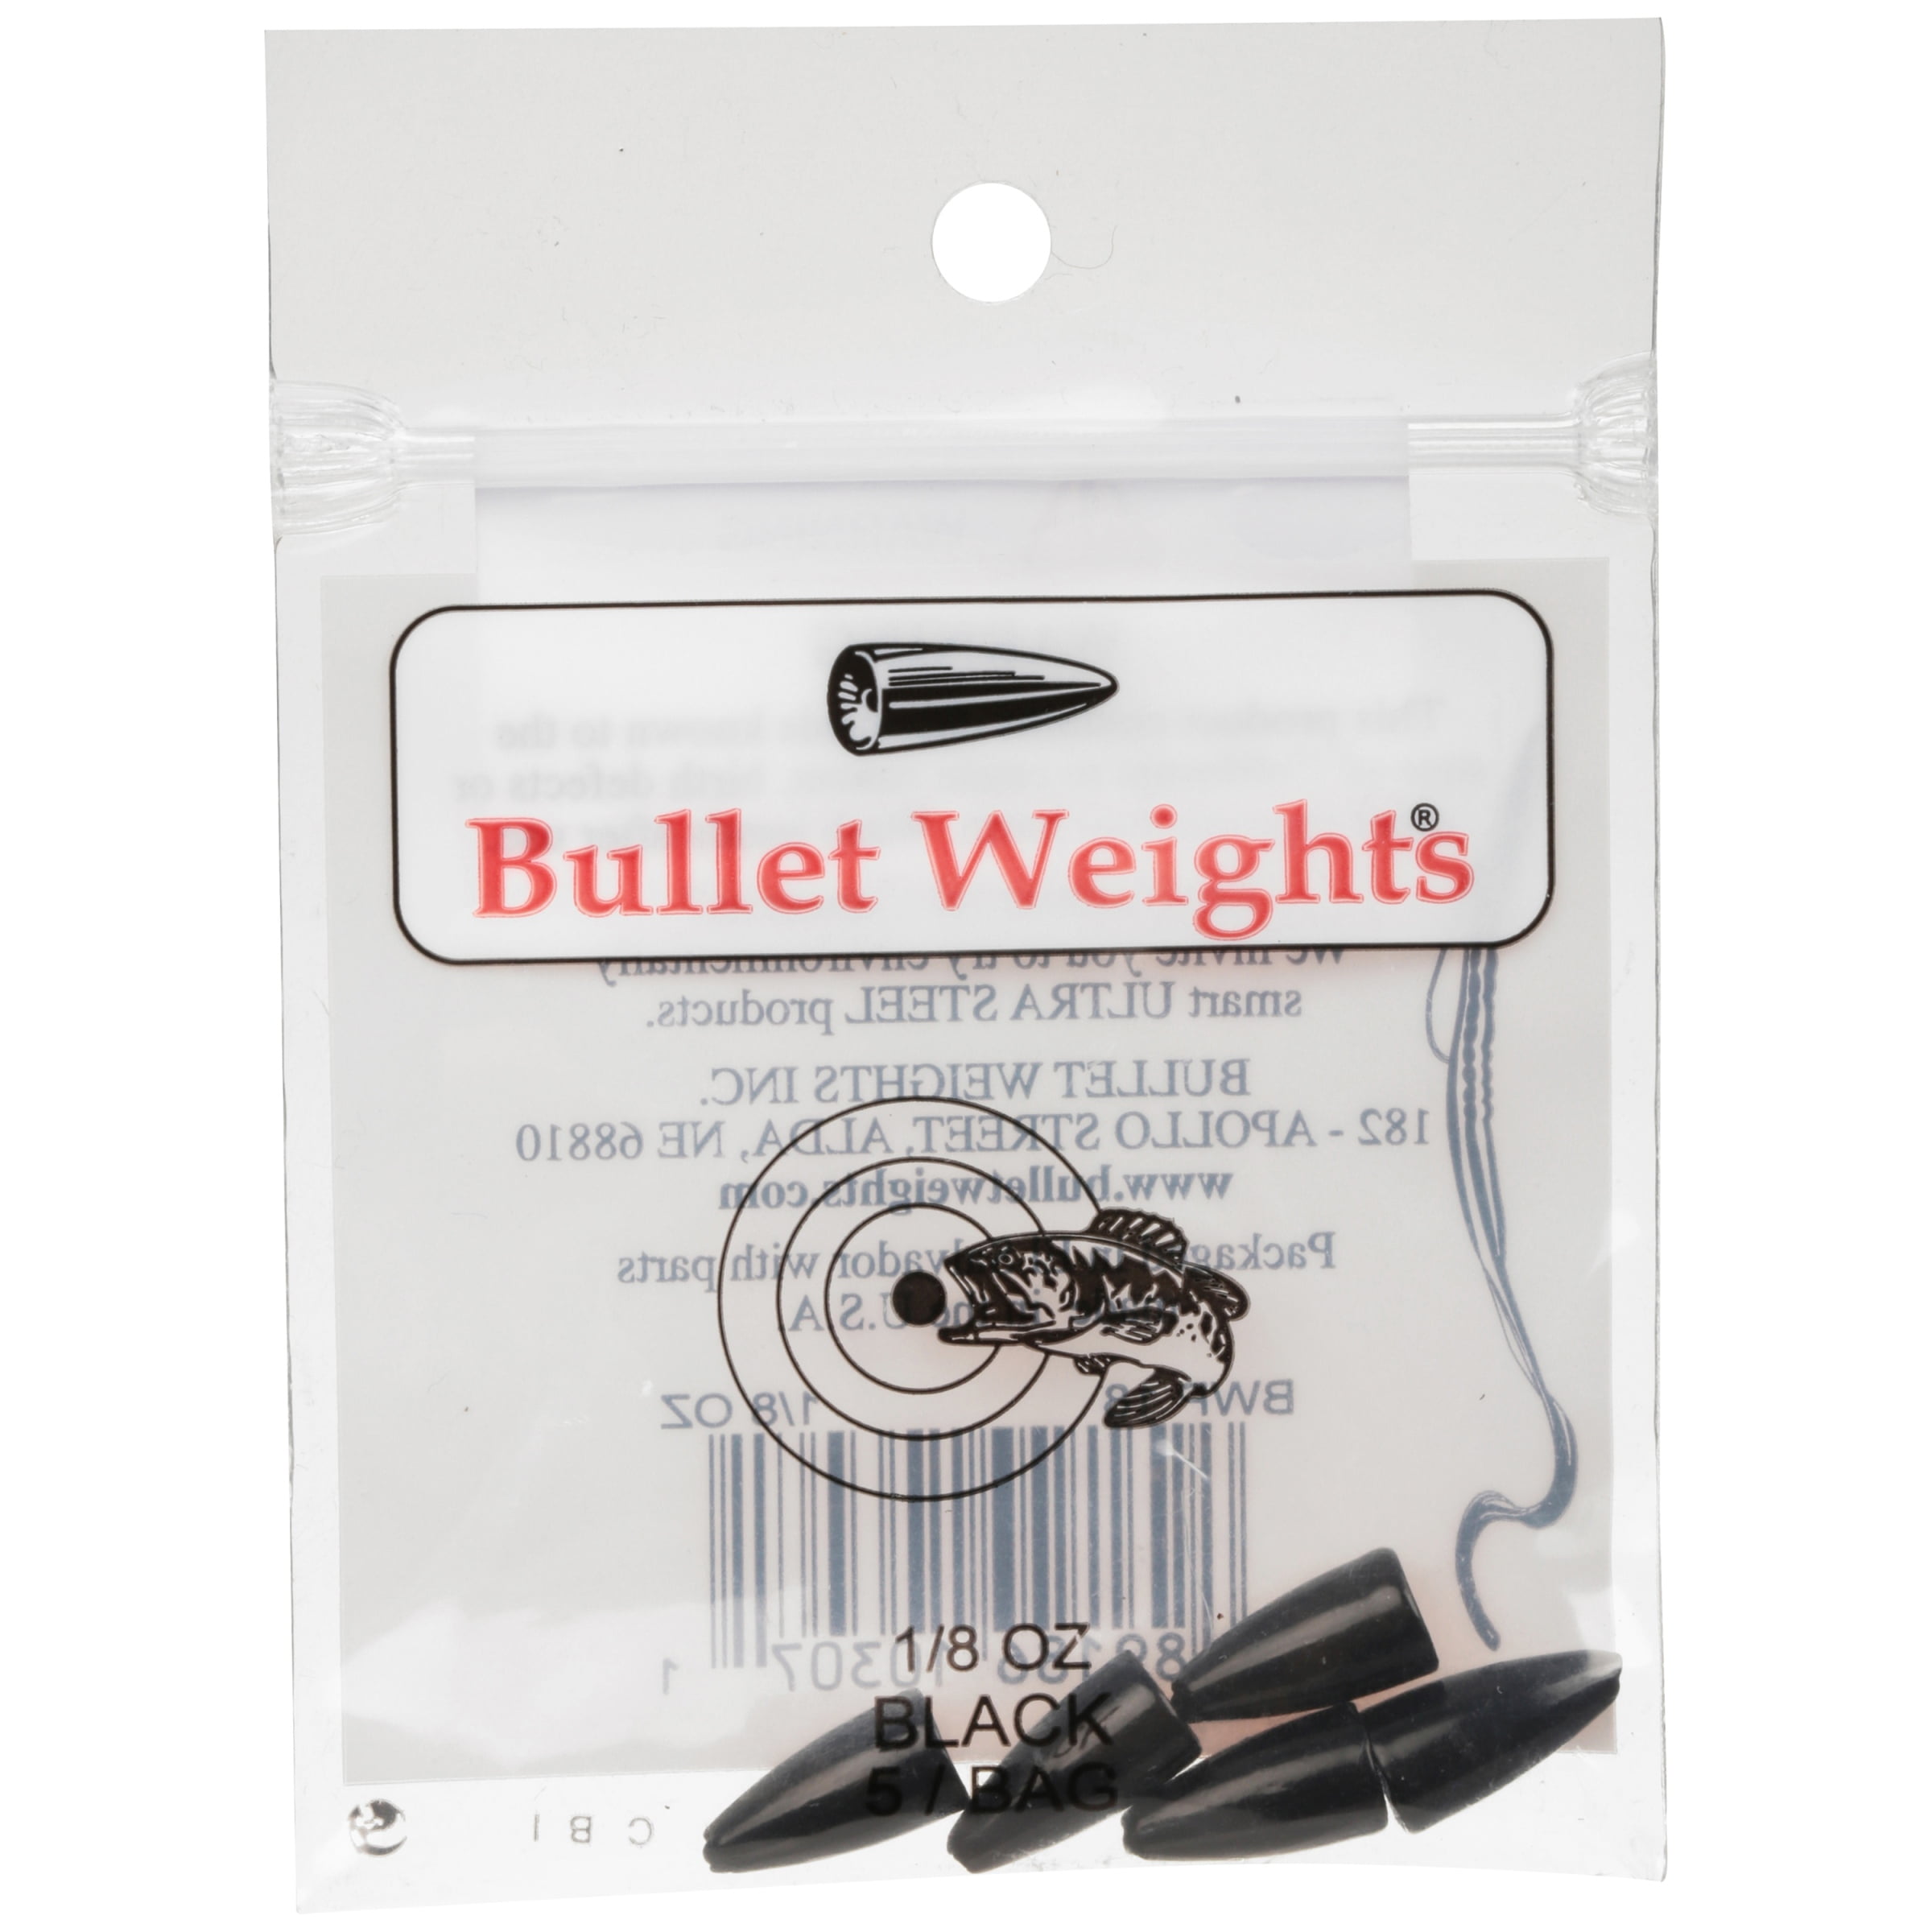 Bullet Weights® Black, 1/8 Oz., 5 Sinkers